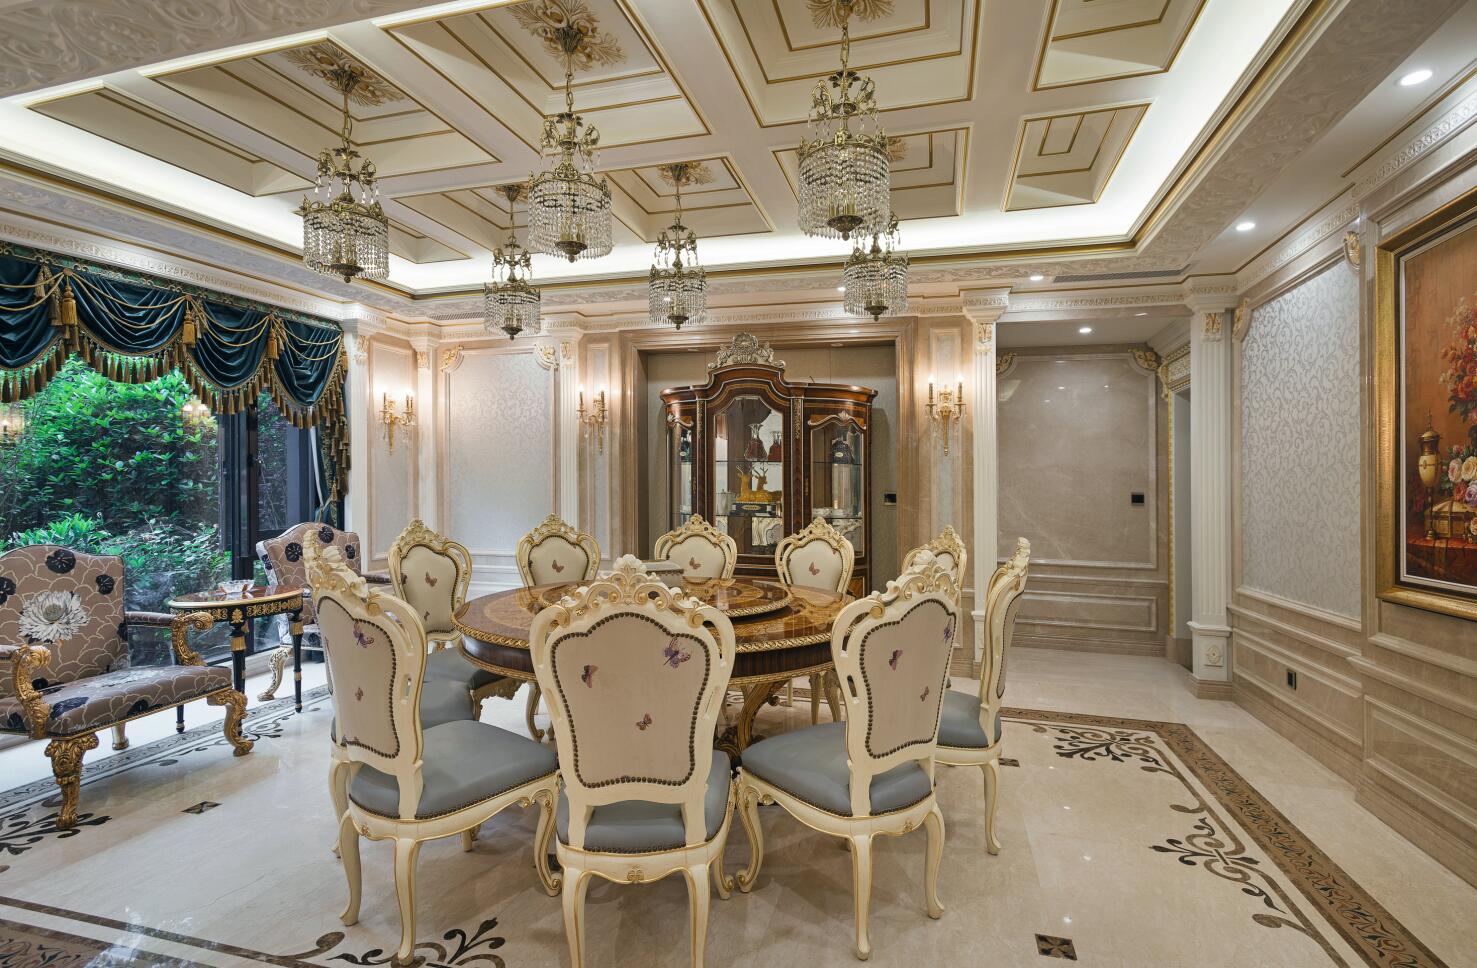 别墅 古典 腾龙设计 餐厅图片来自腾龙设计在提香别墅装修欧式风格尽显典雅风的分享